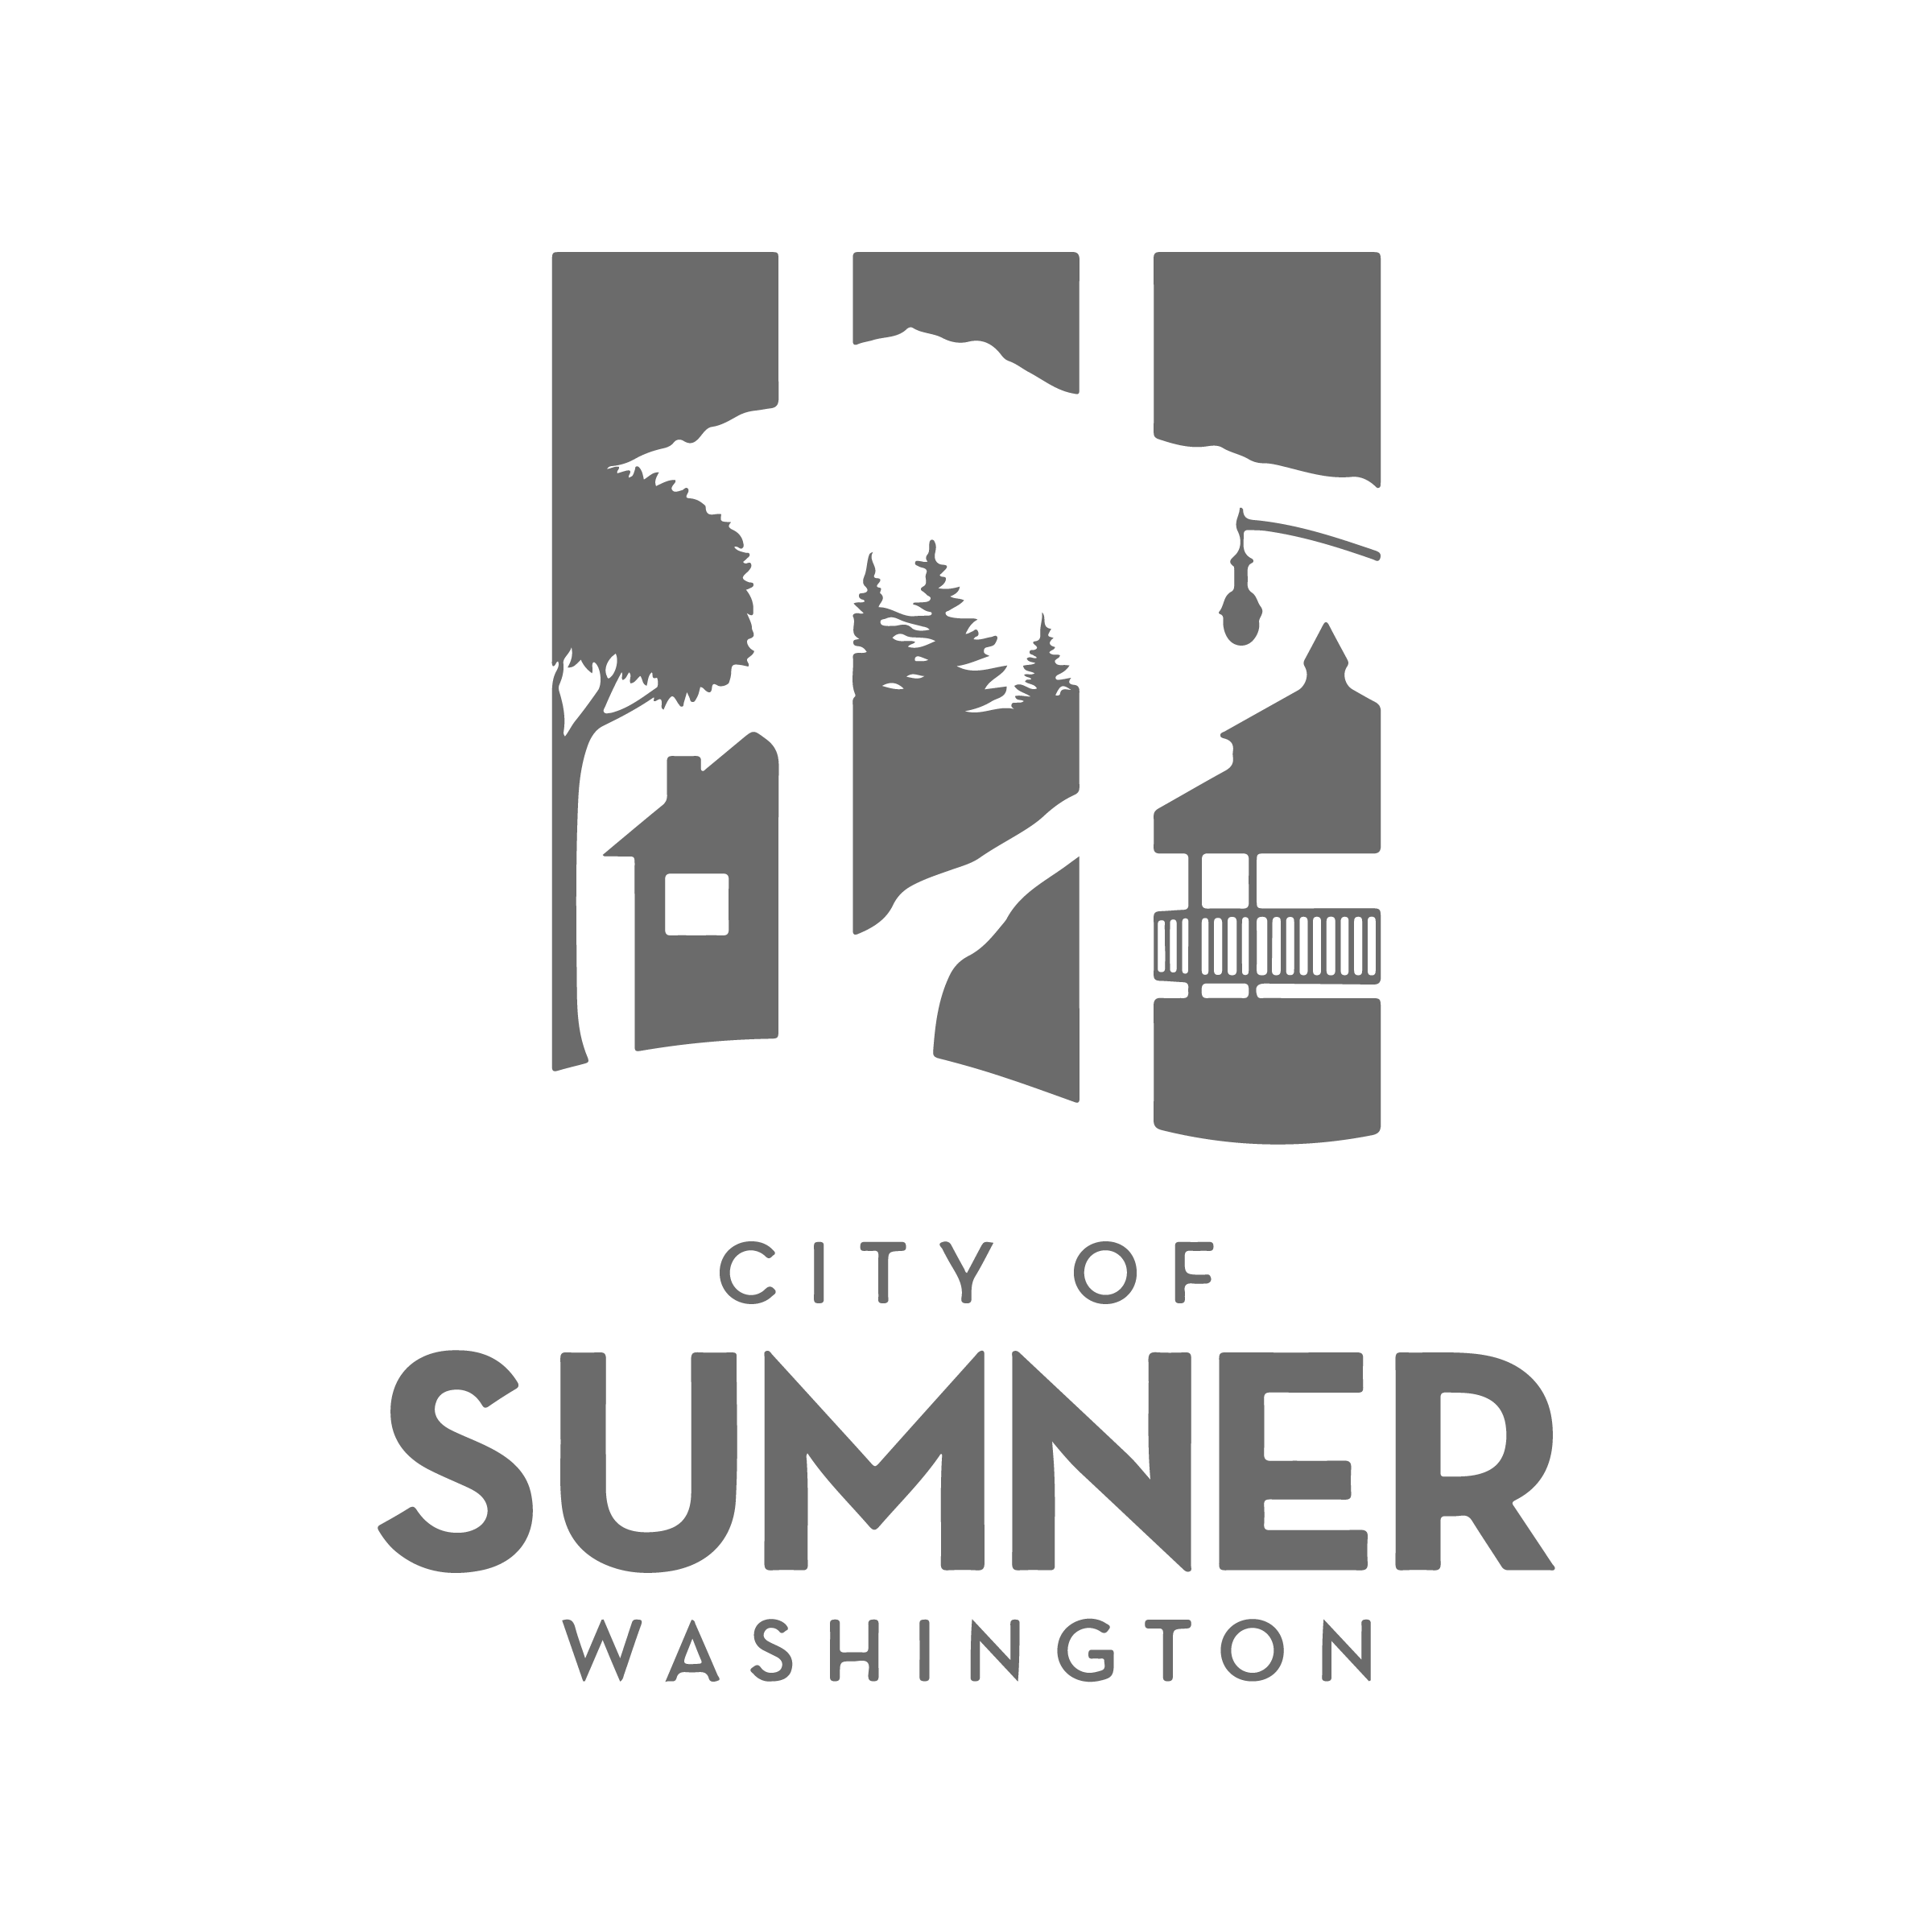 CityofSumner_LogoGray